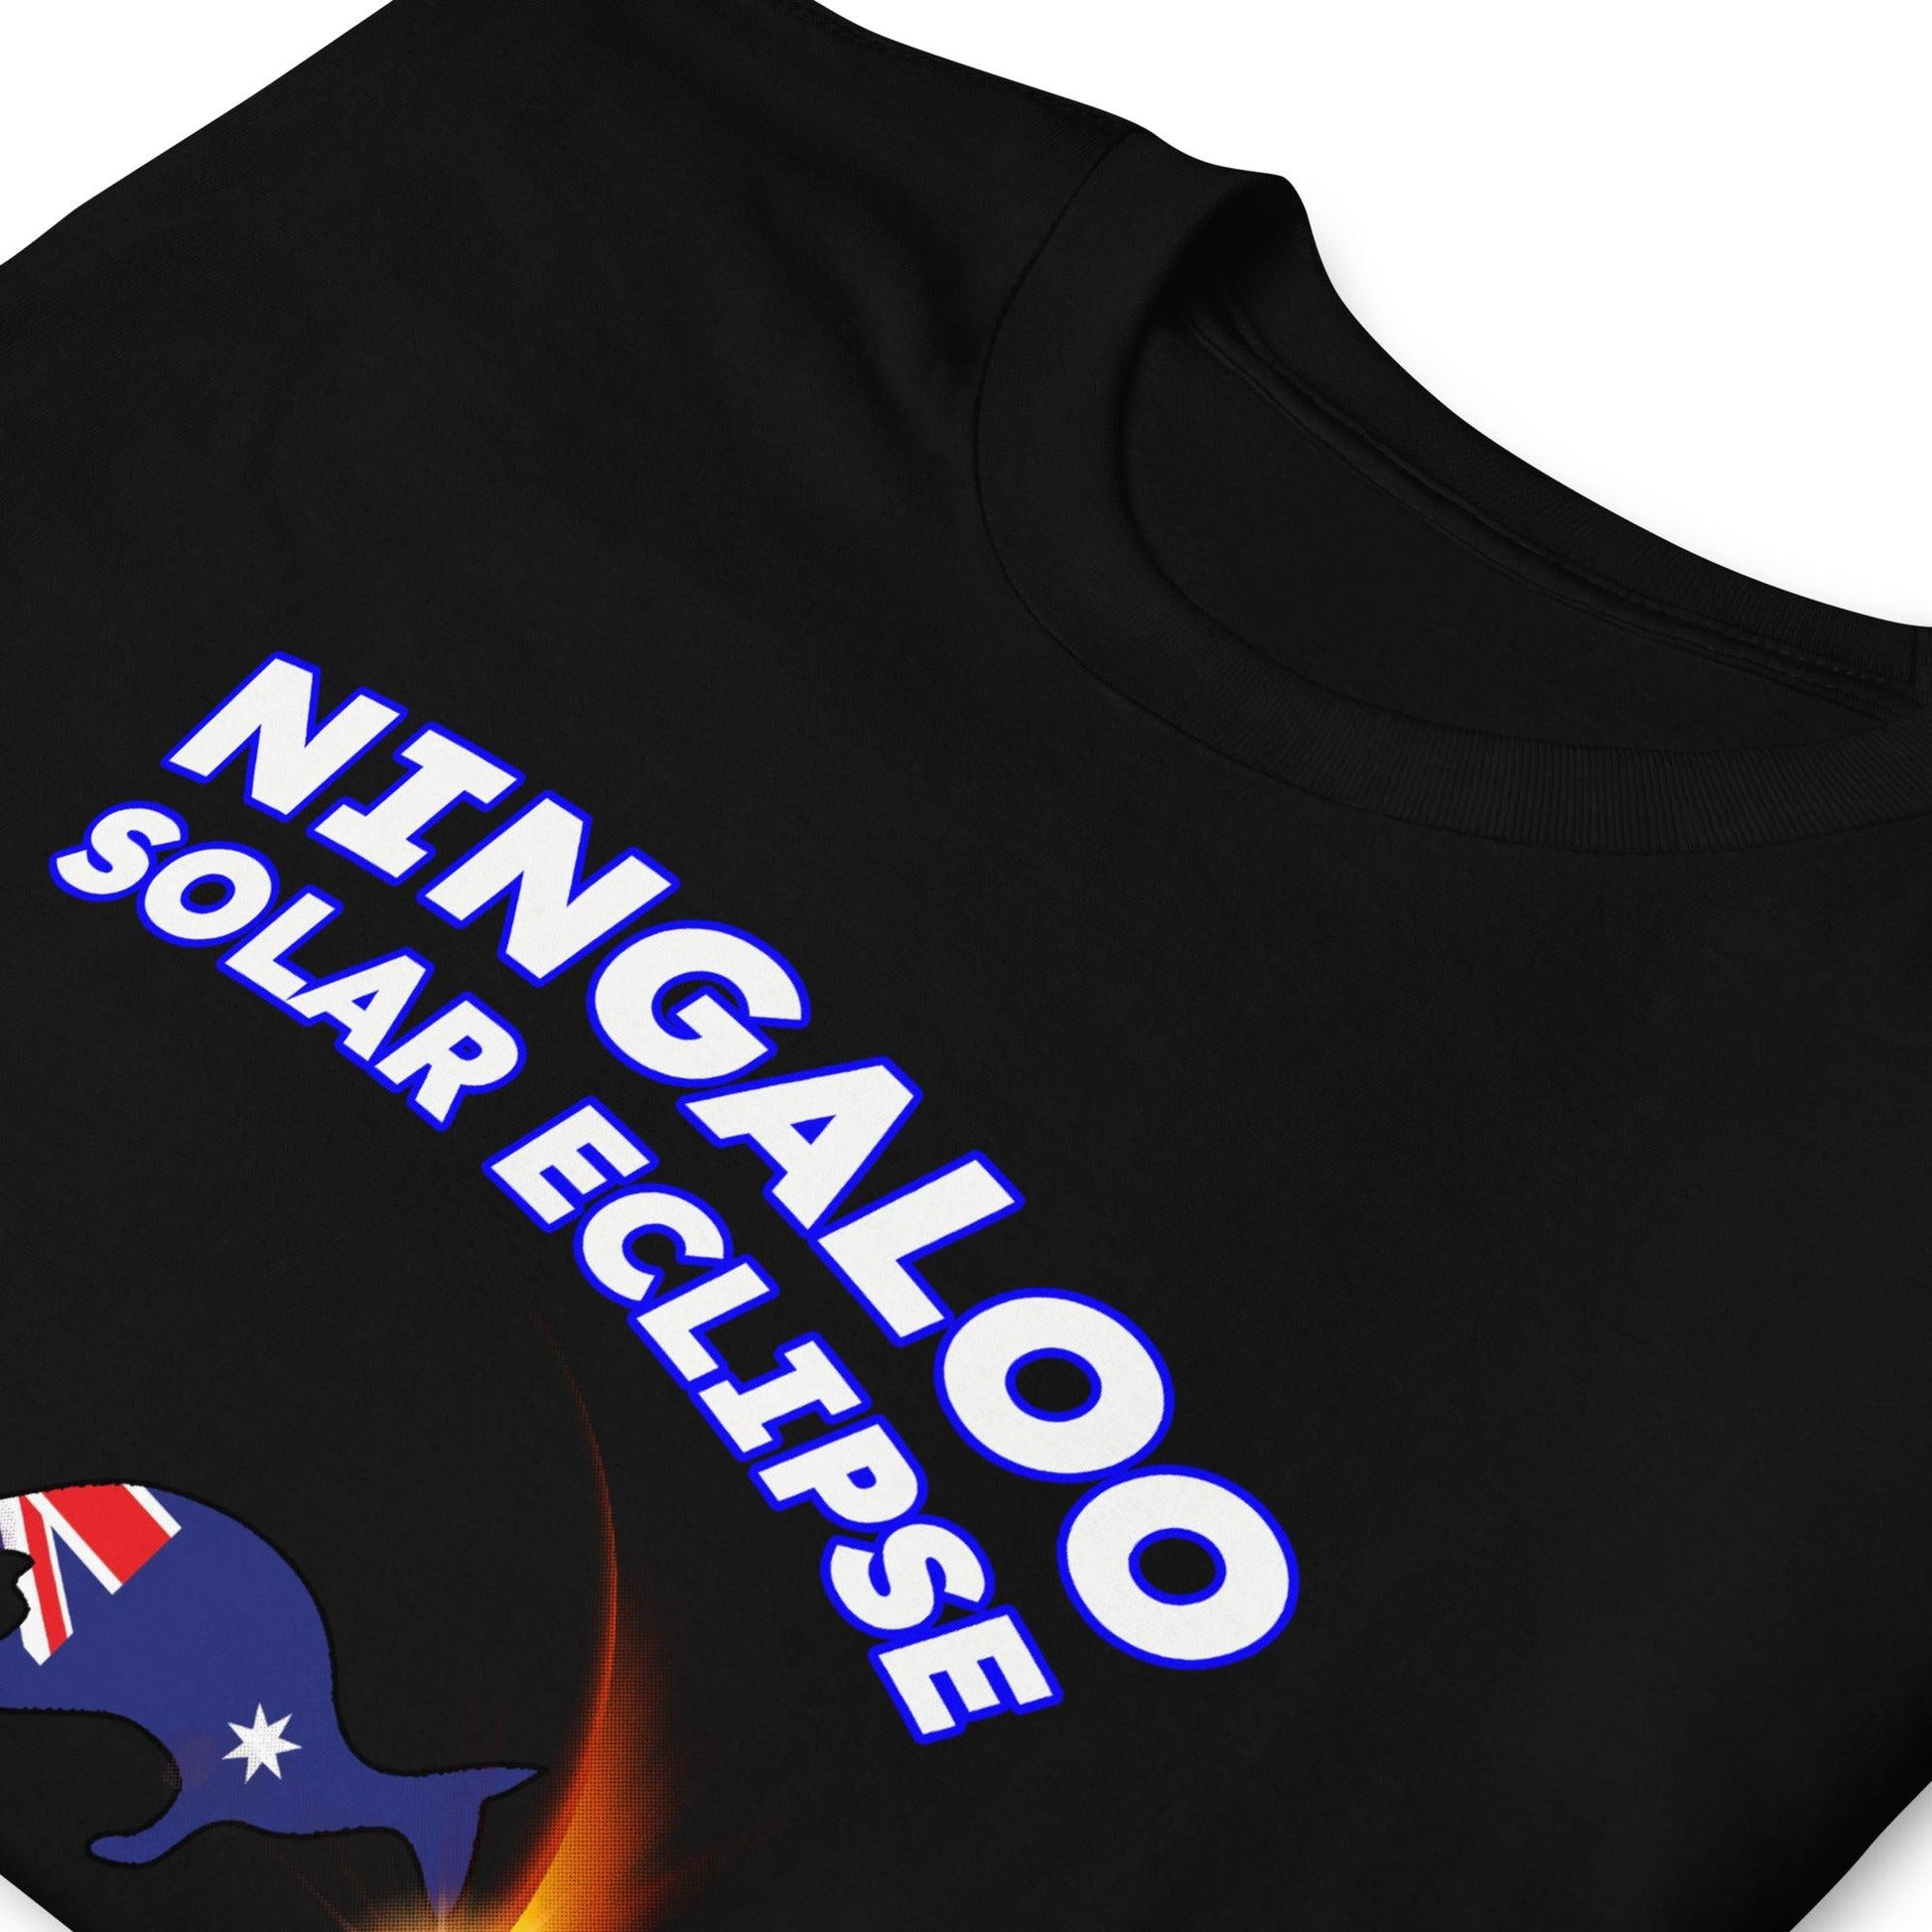 Ningaloo Solar Eclipse 2023 Kangaroo (Dark Tees) - Astro TShirts